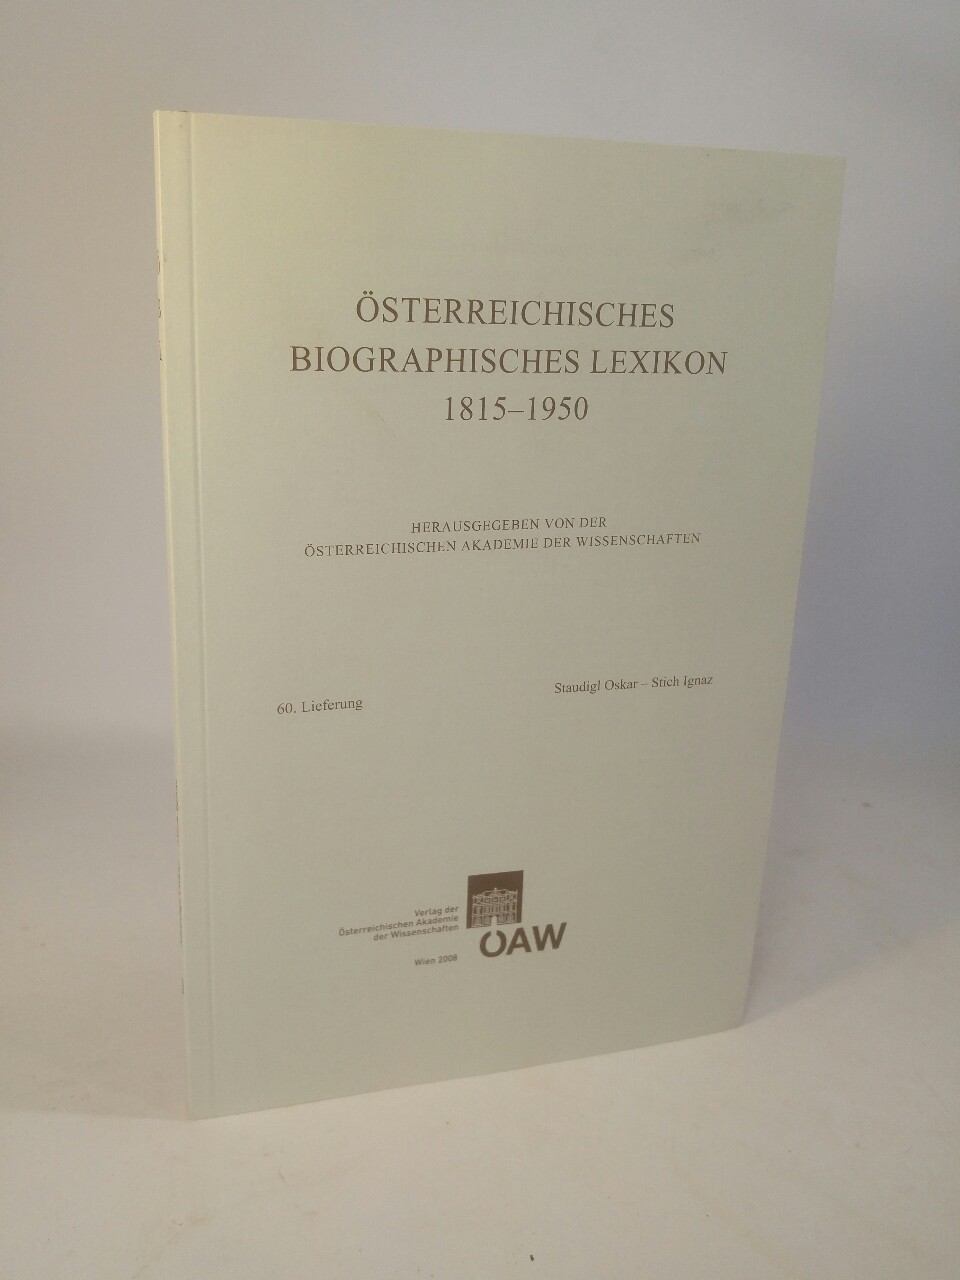 Österreichisches Biographisches Lexikon 1815-1950. 60. Lieferung: Staudigl Oskar - Stich Ignaz. - Österreichische Akademie der Wissenschaften